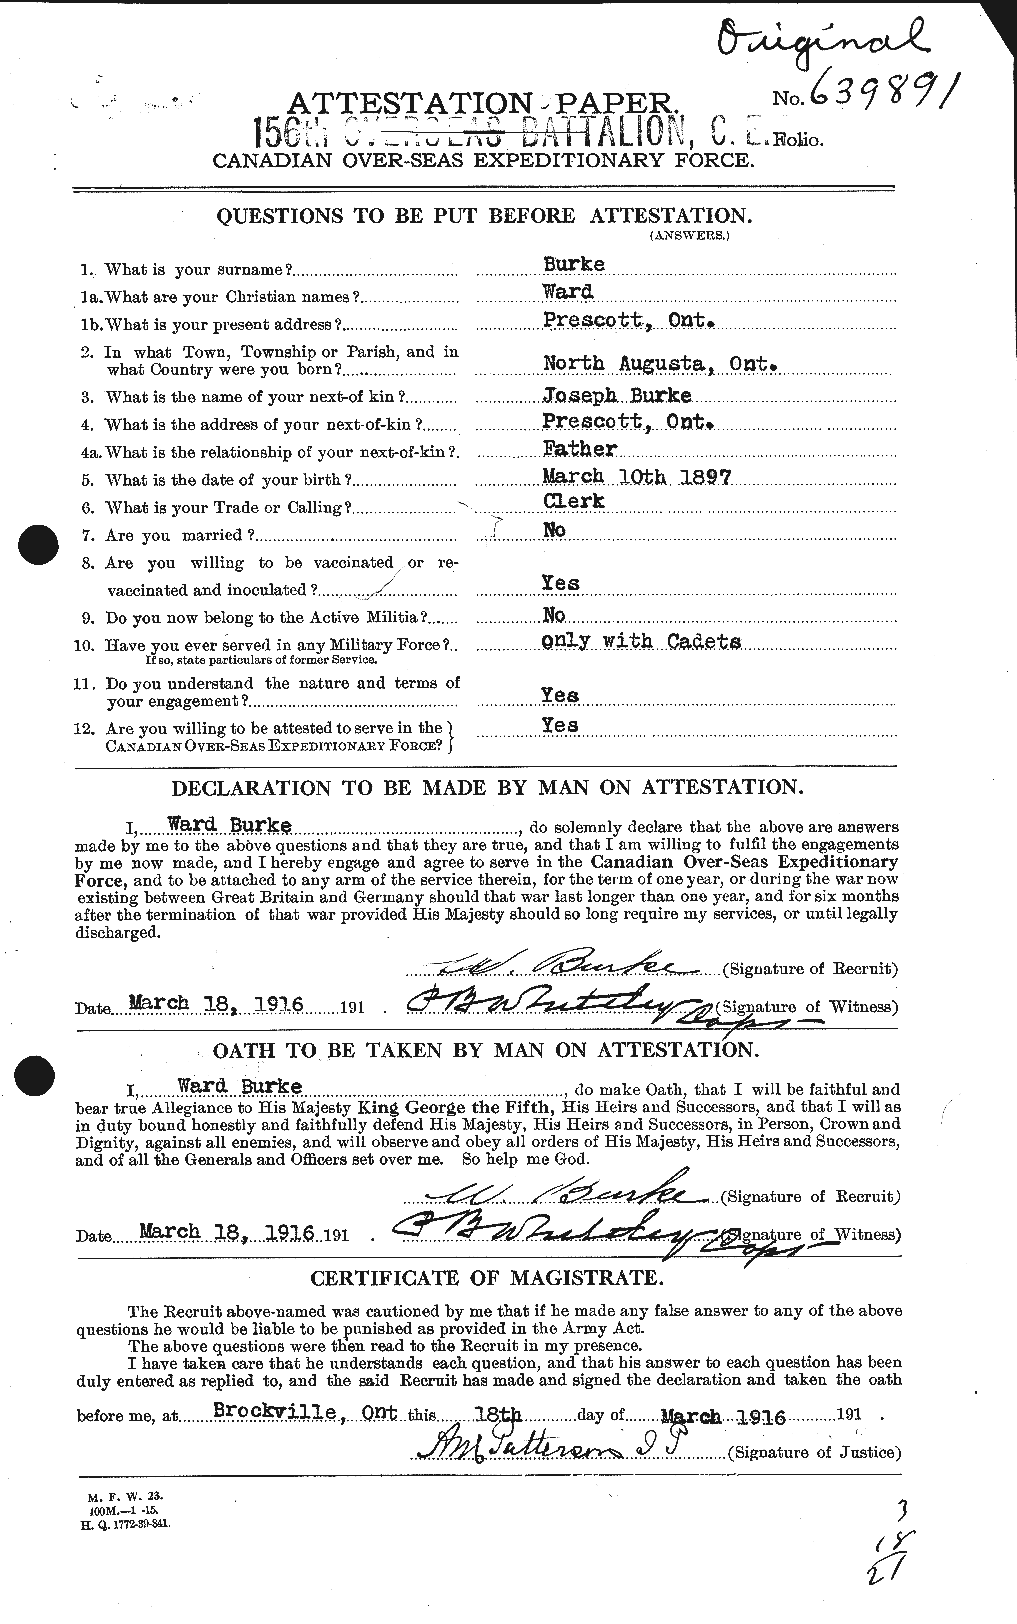 Dossiers du Personnel de la Première Guerre mondiale - CEC 278496a